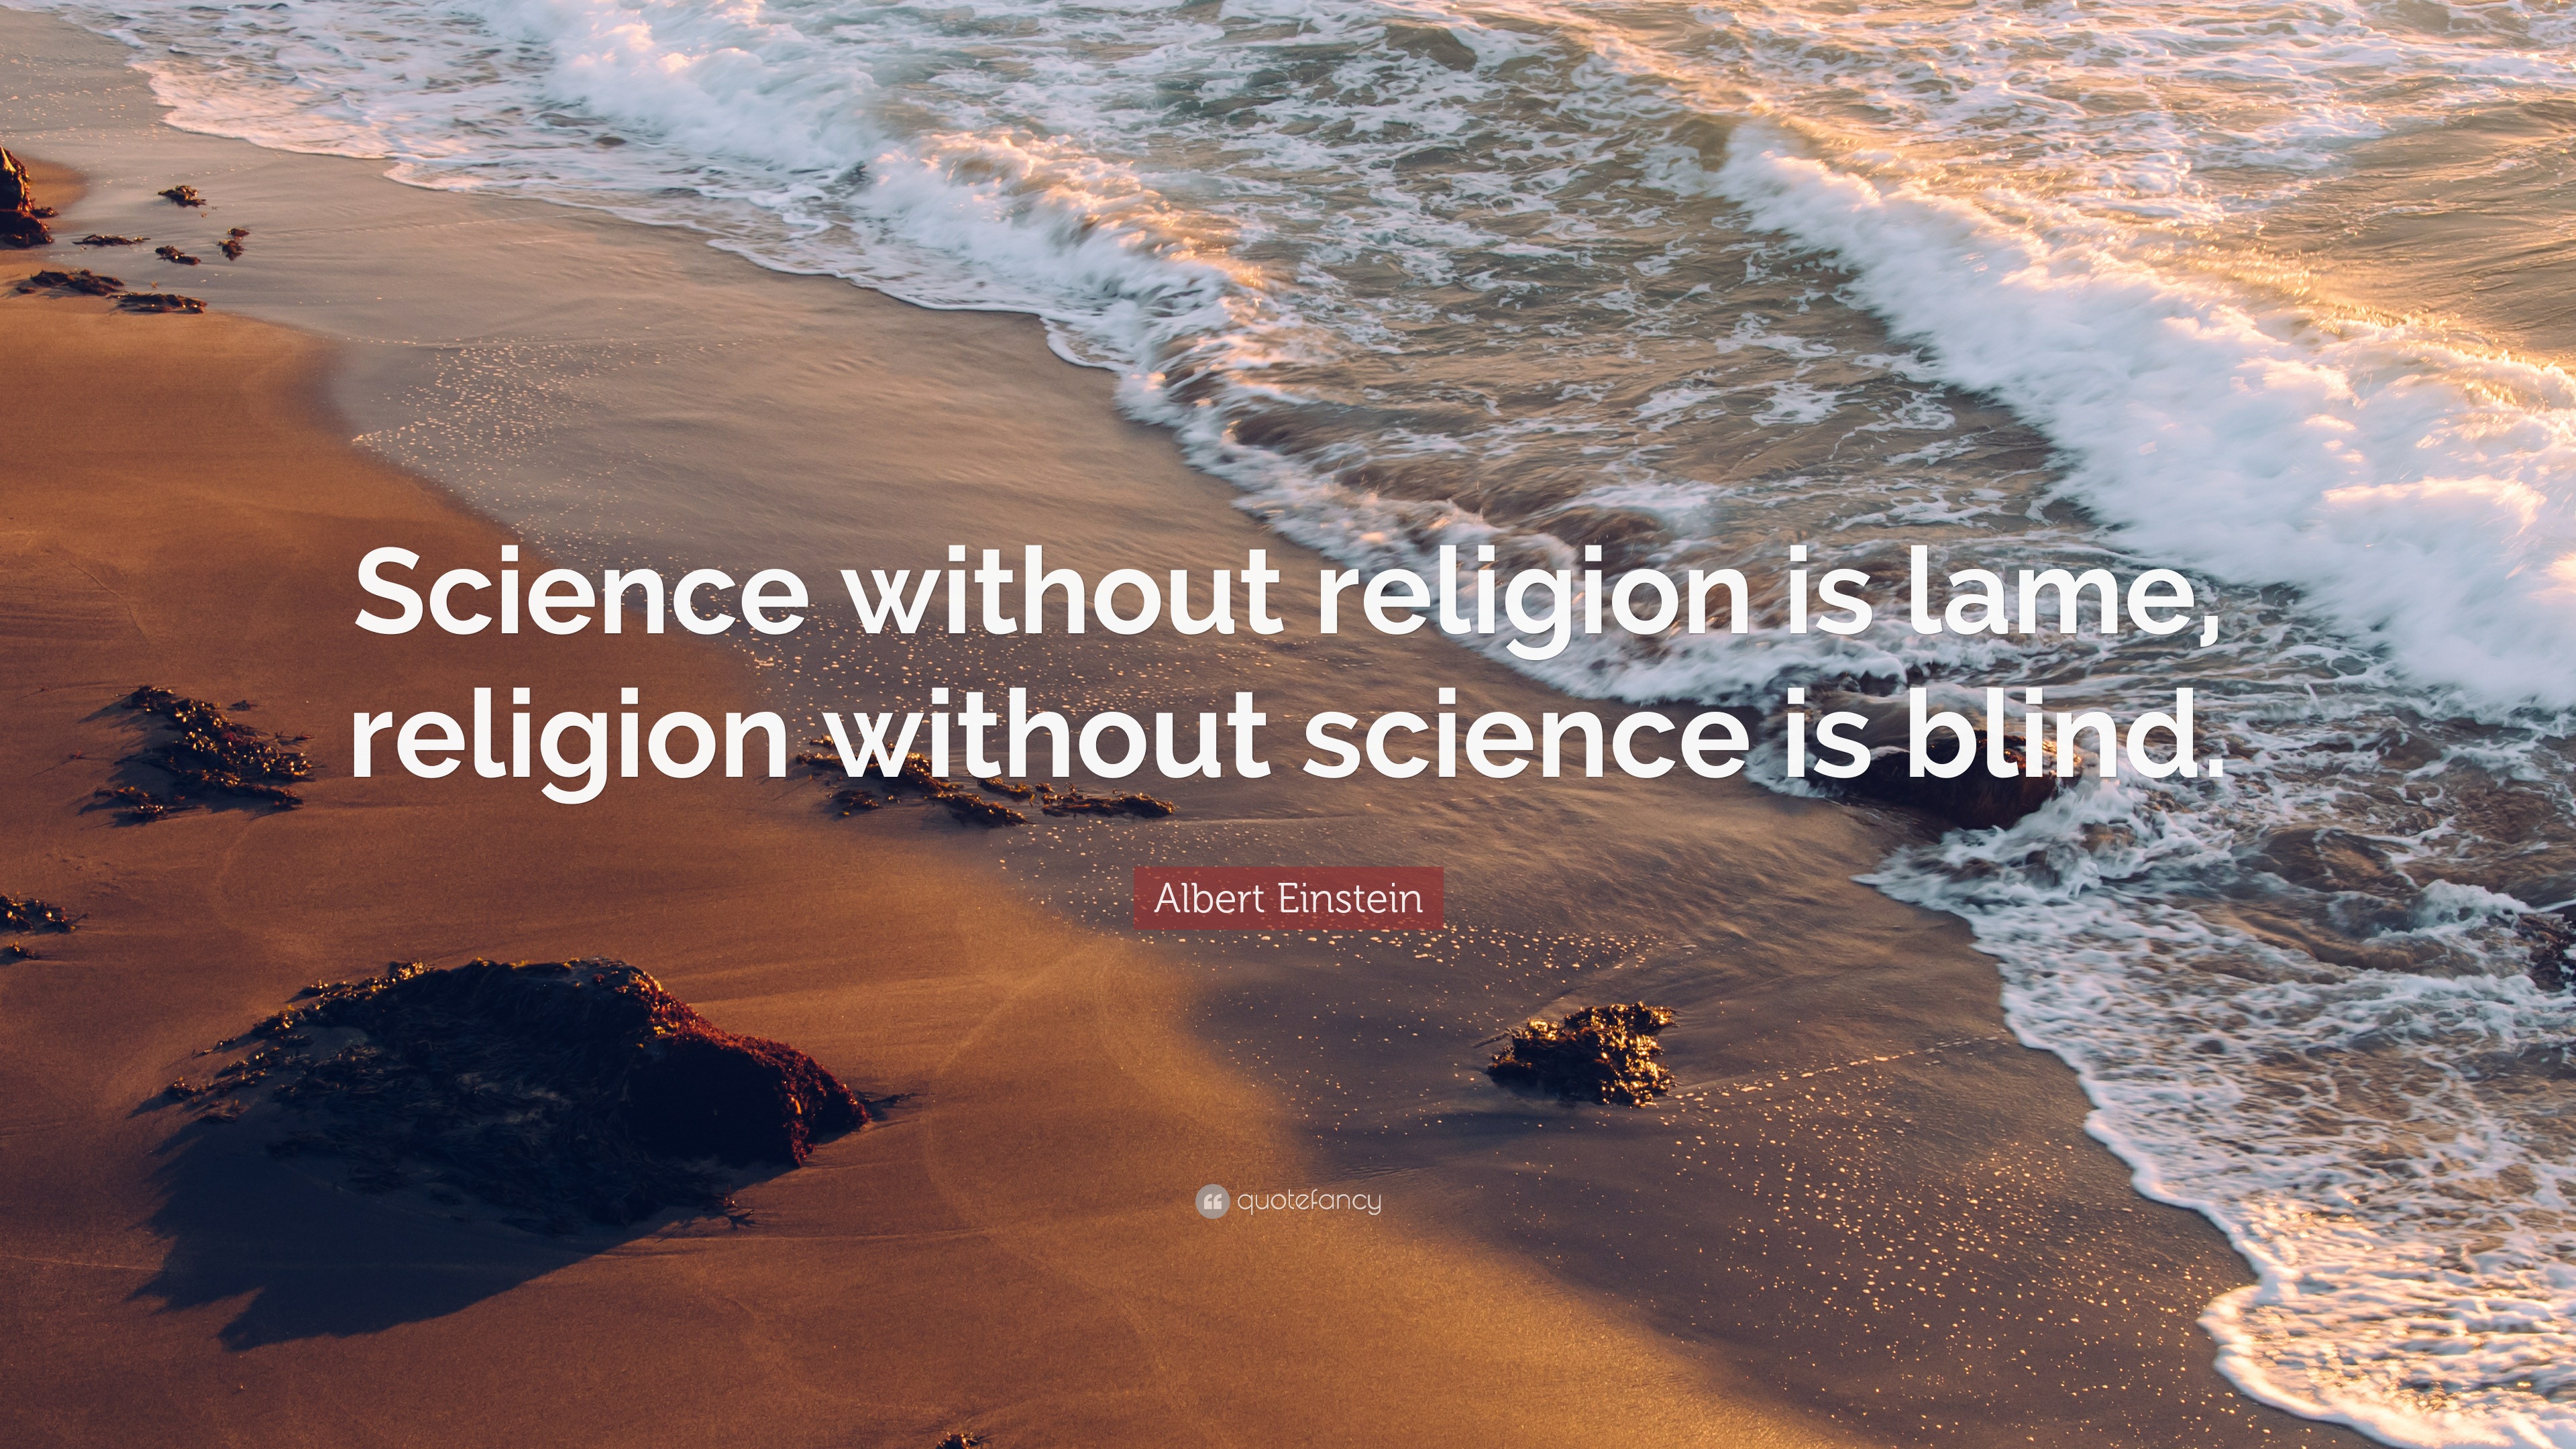 einstein's essay science and religion